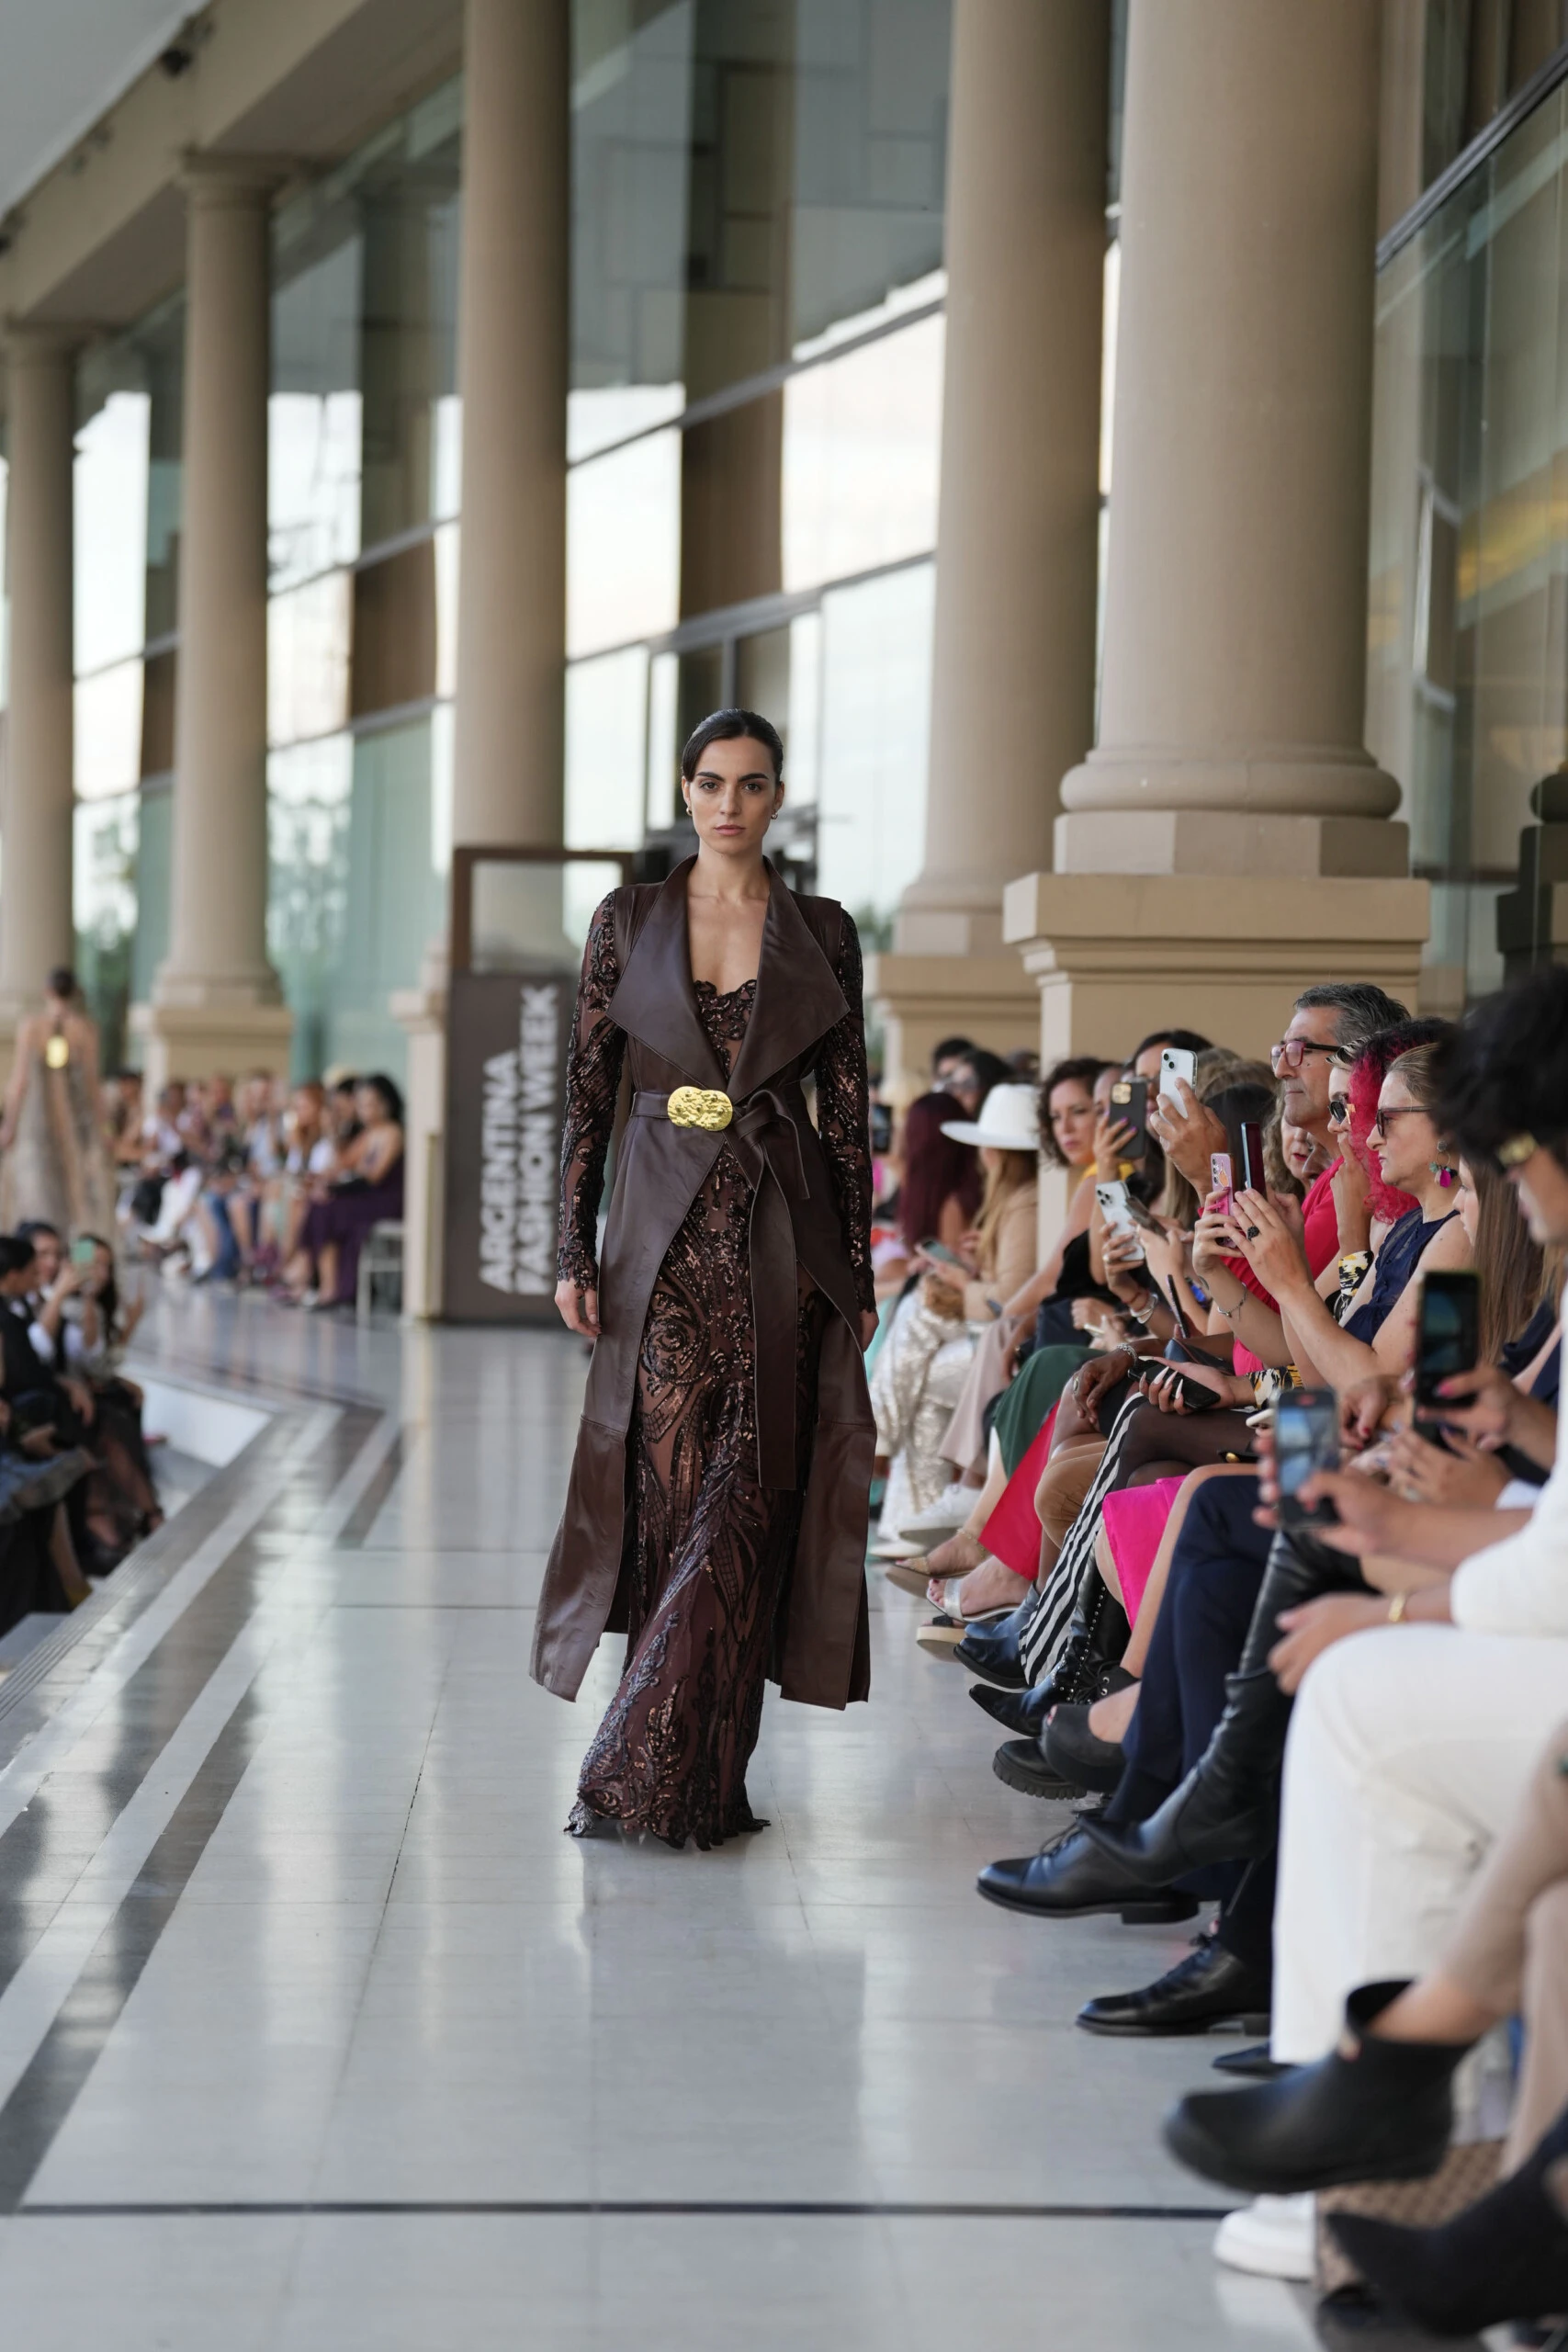 El desfile de Ivana Picallo en el Argentina Fashion Week